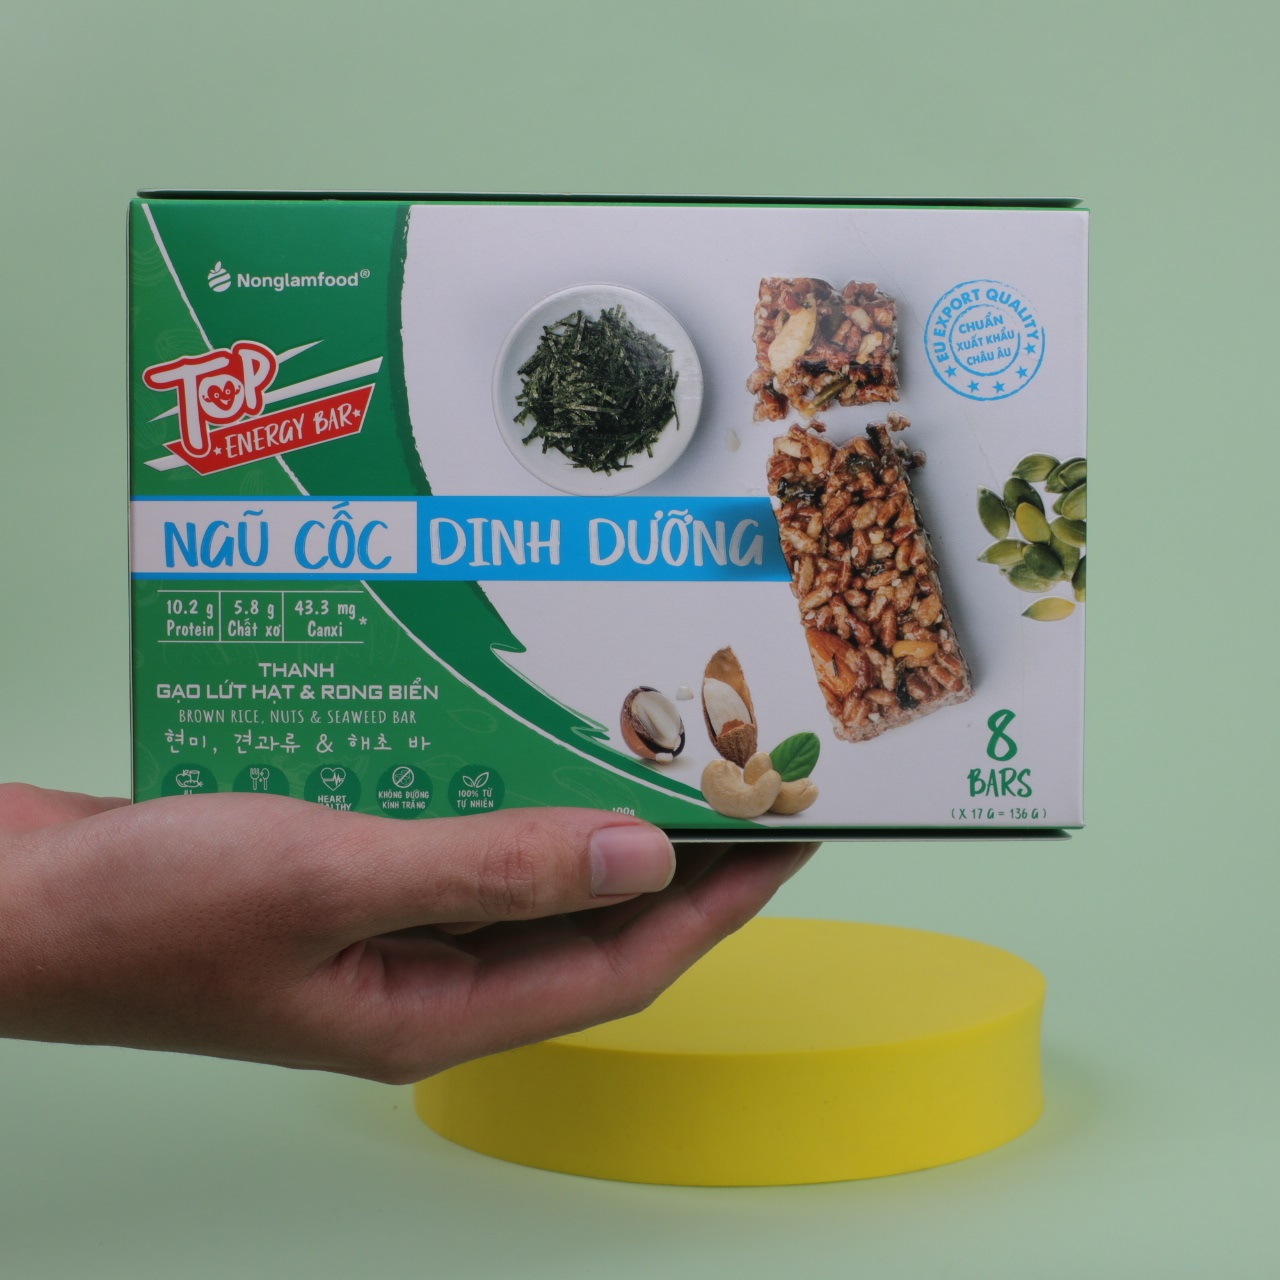 Thanh gạo lứt Hạt & Rong Biển Nonglamfood hộp 8 thanh 136g | Chay mặn đều dùng được | Hỗ trợ ăn kiêng giảm cân | Bữa ăn dinh dưỡng thay thế lành mạnh